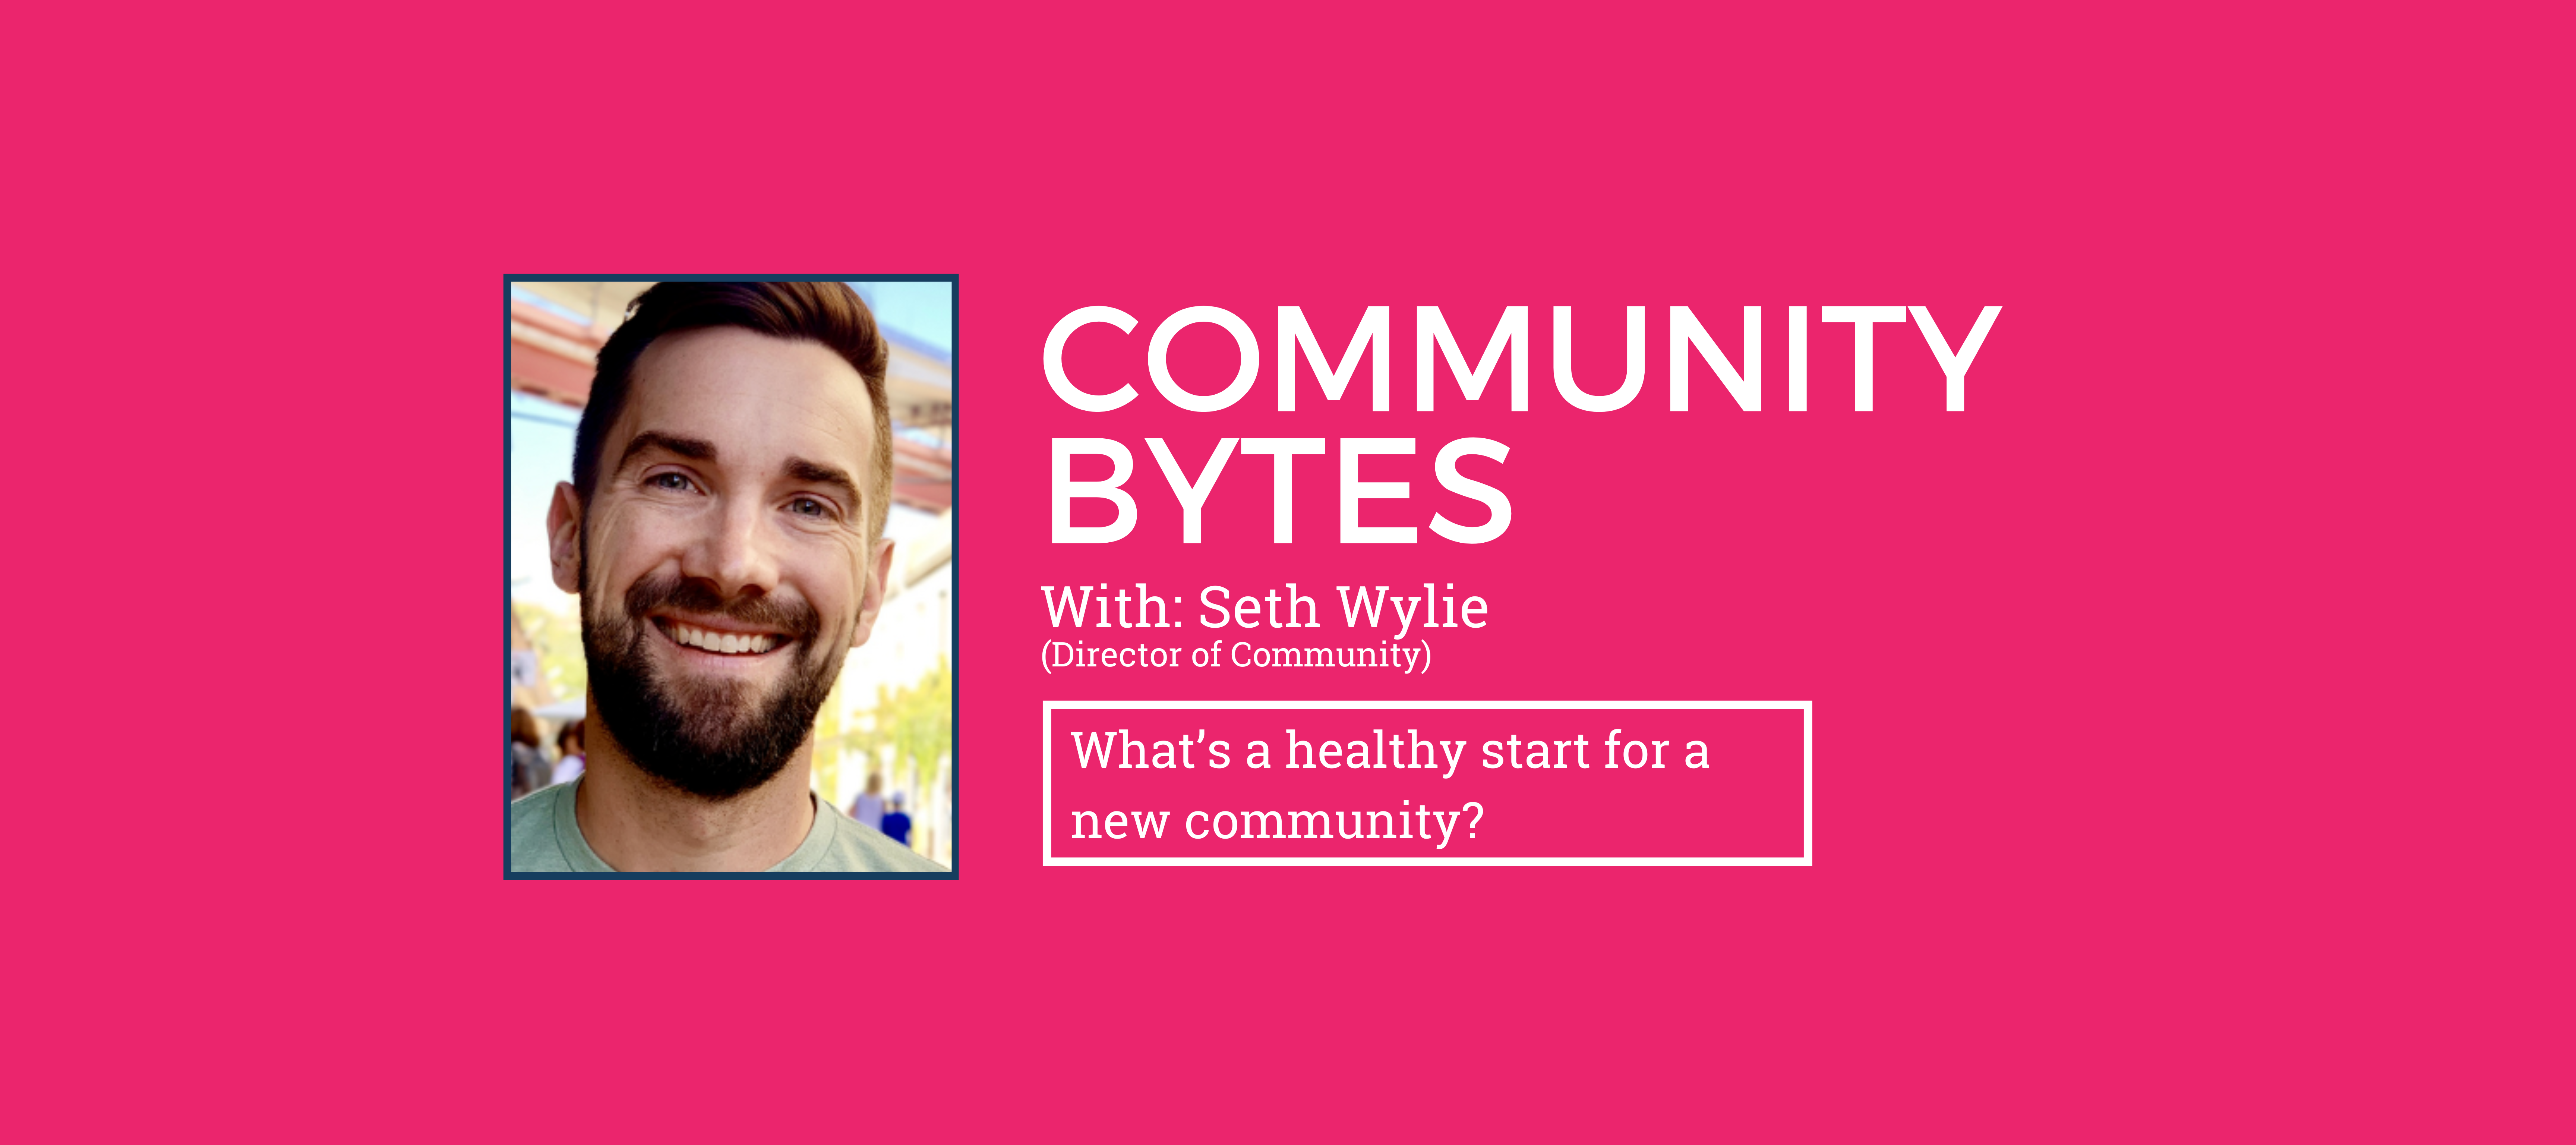 Community Bytes w/ Seth Wylie: A healthy start is a focused start